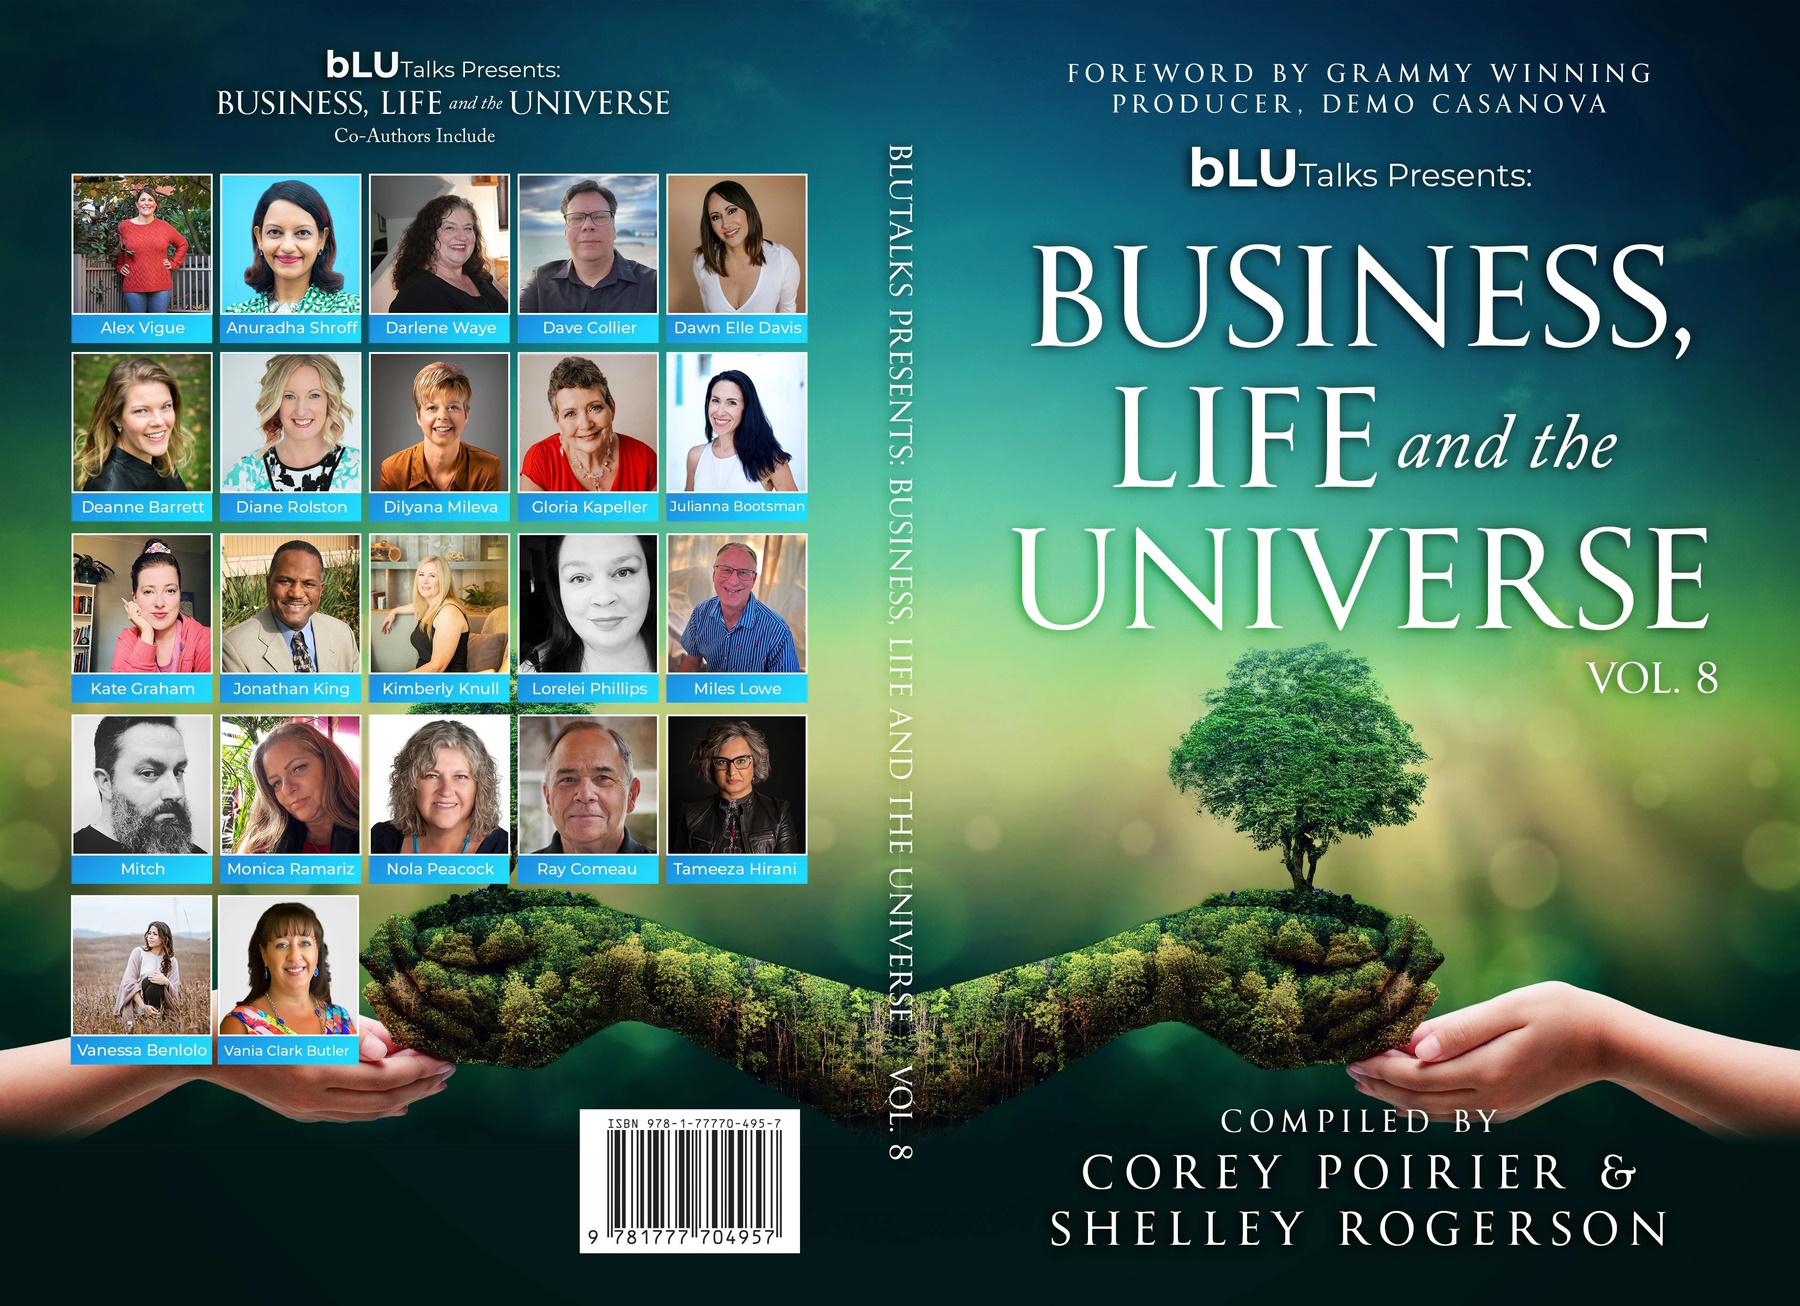 New bLU Talks Book Vol. 8 Just Released